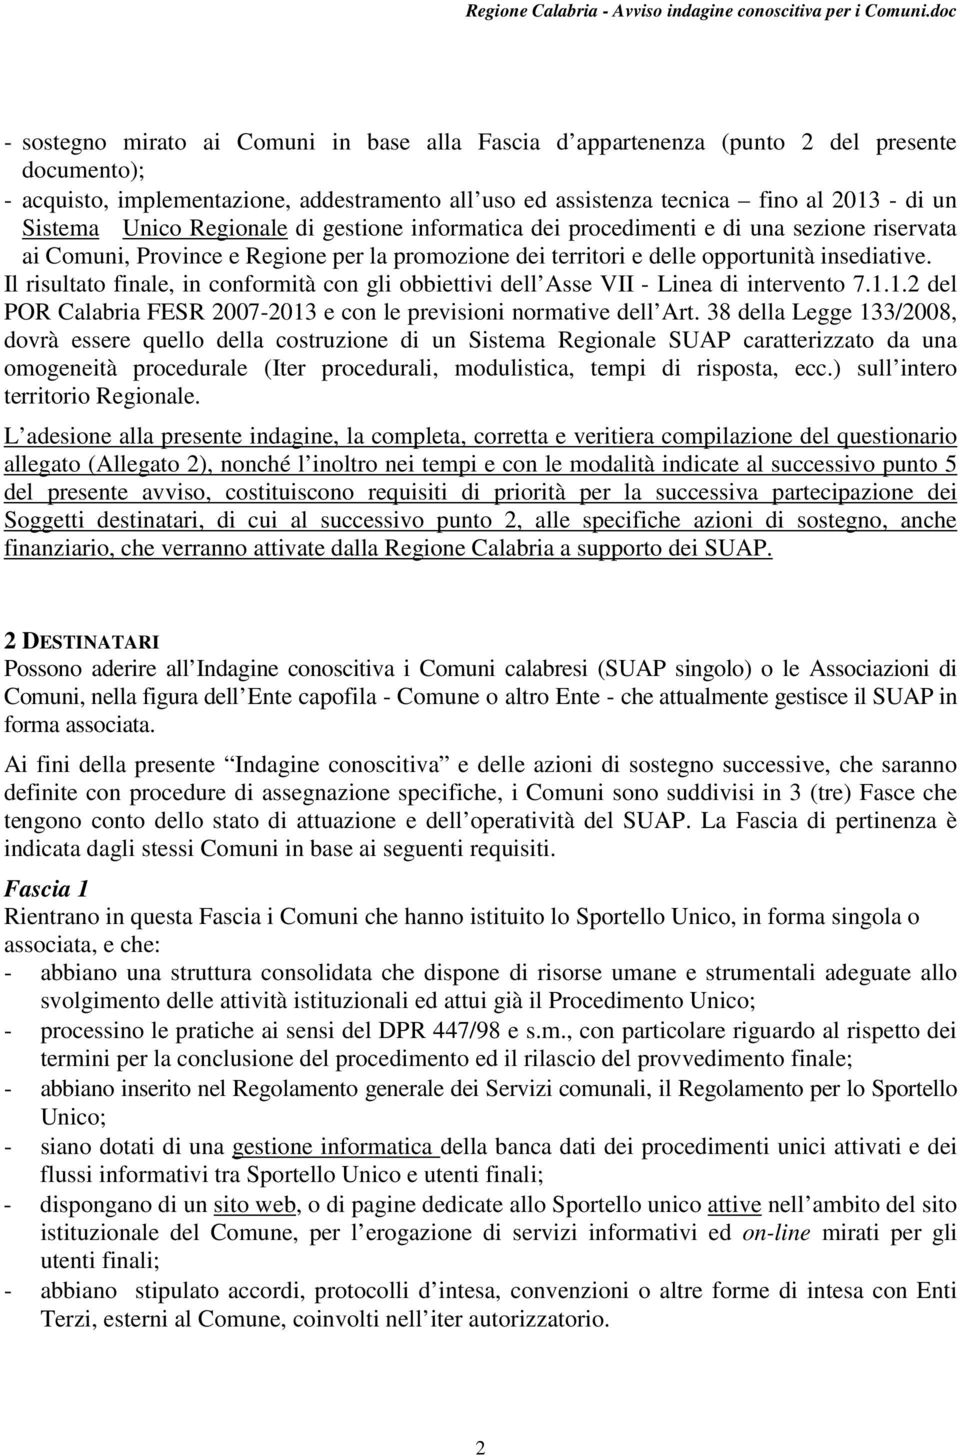 Il risultato finale, in conformità con gli obbiettivi dell Asse VII - Linea di intervento 7.1.1.2 del POR Calabria FESR 2007-2013 e con le previsioni normative dell Art.